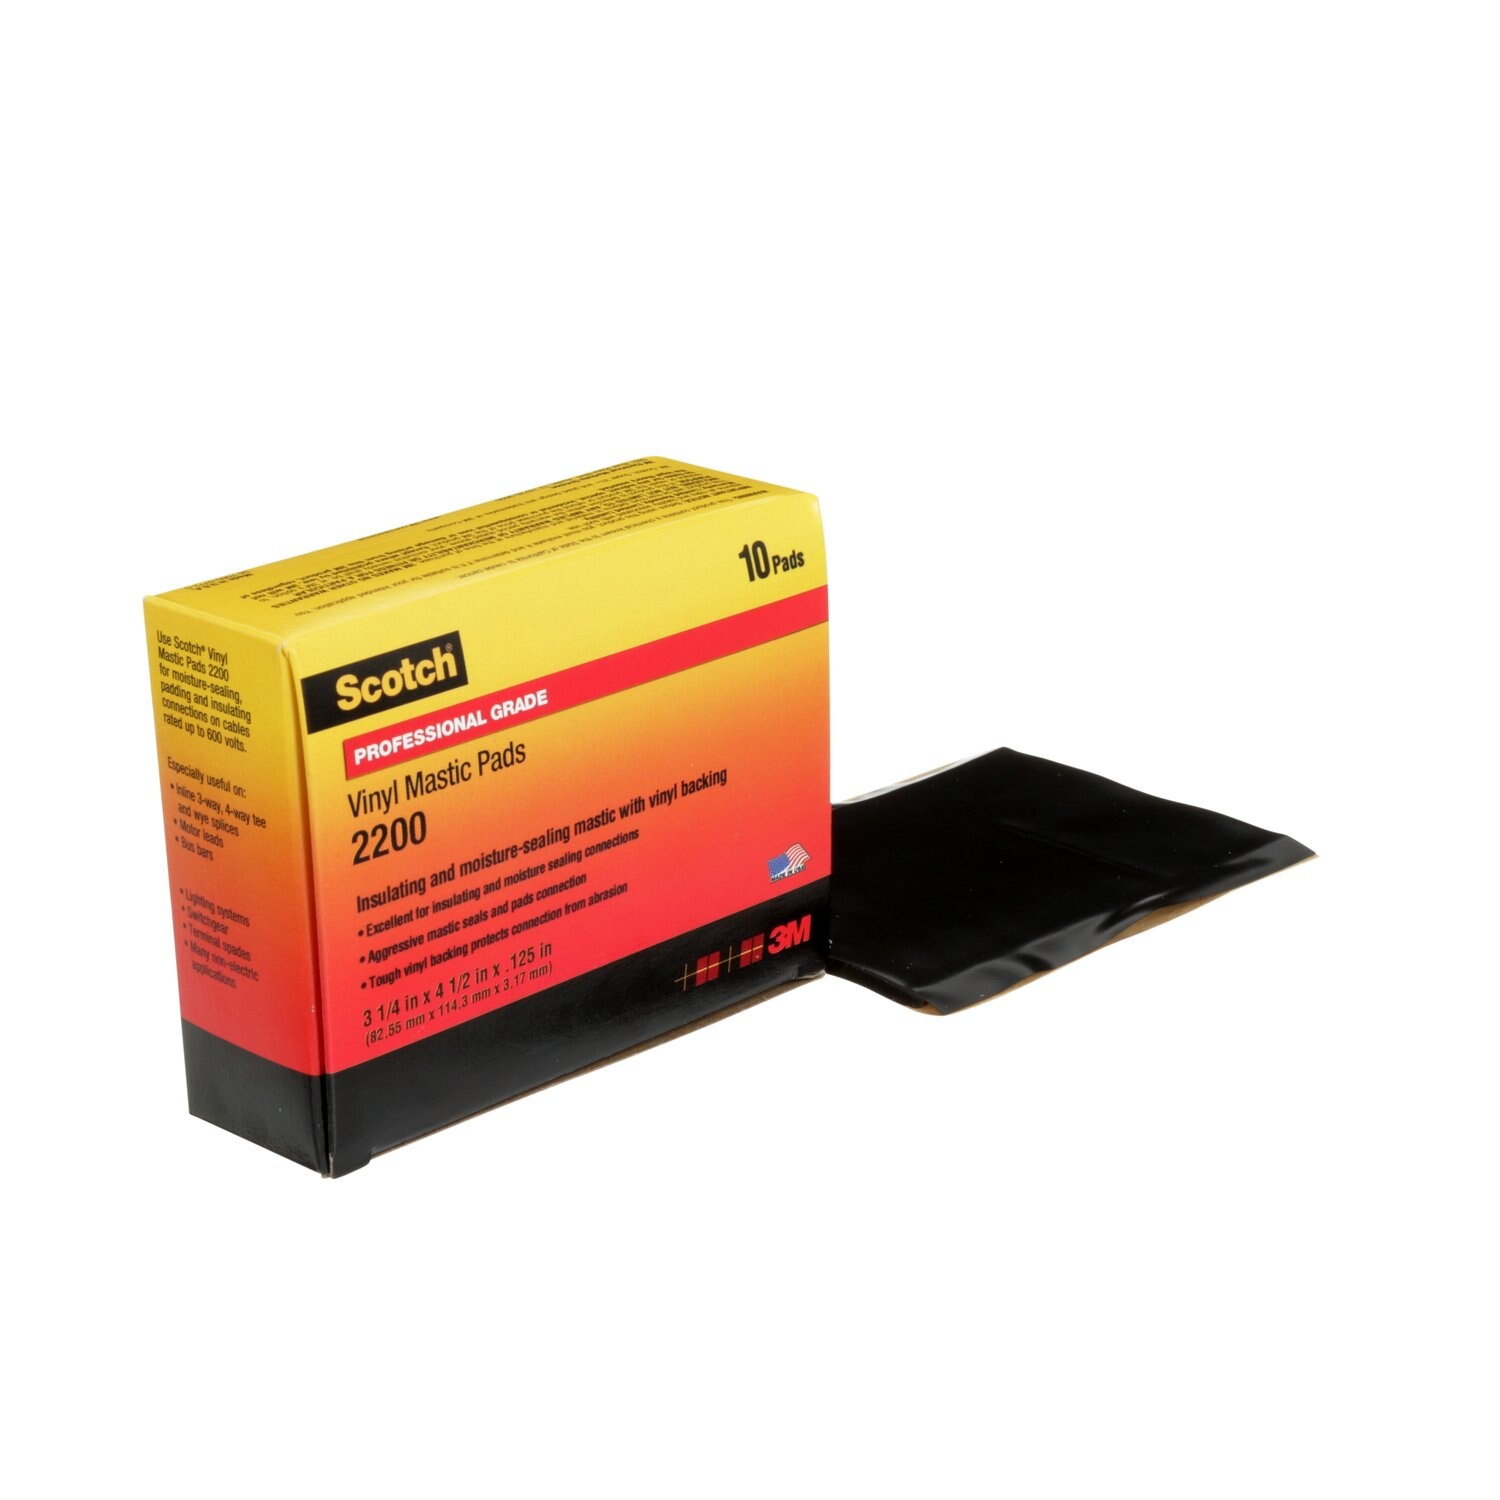 7000057773 - Scotch Vinyl Mastic Pad 2200, 3-1/4 in x 4-1/2 in, Black, 10
pads/carton, 50 pads/Case